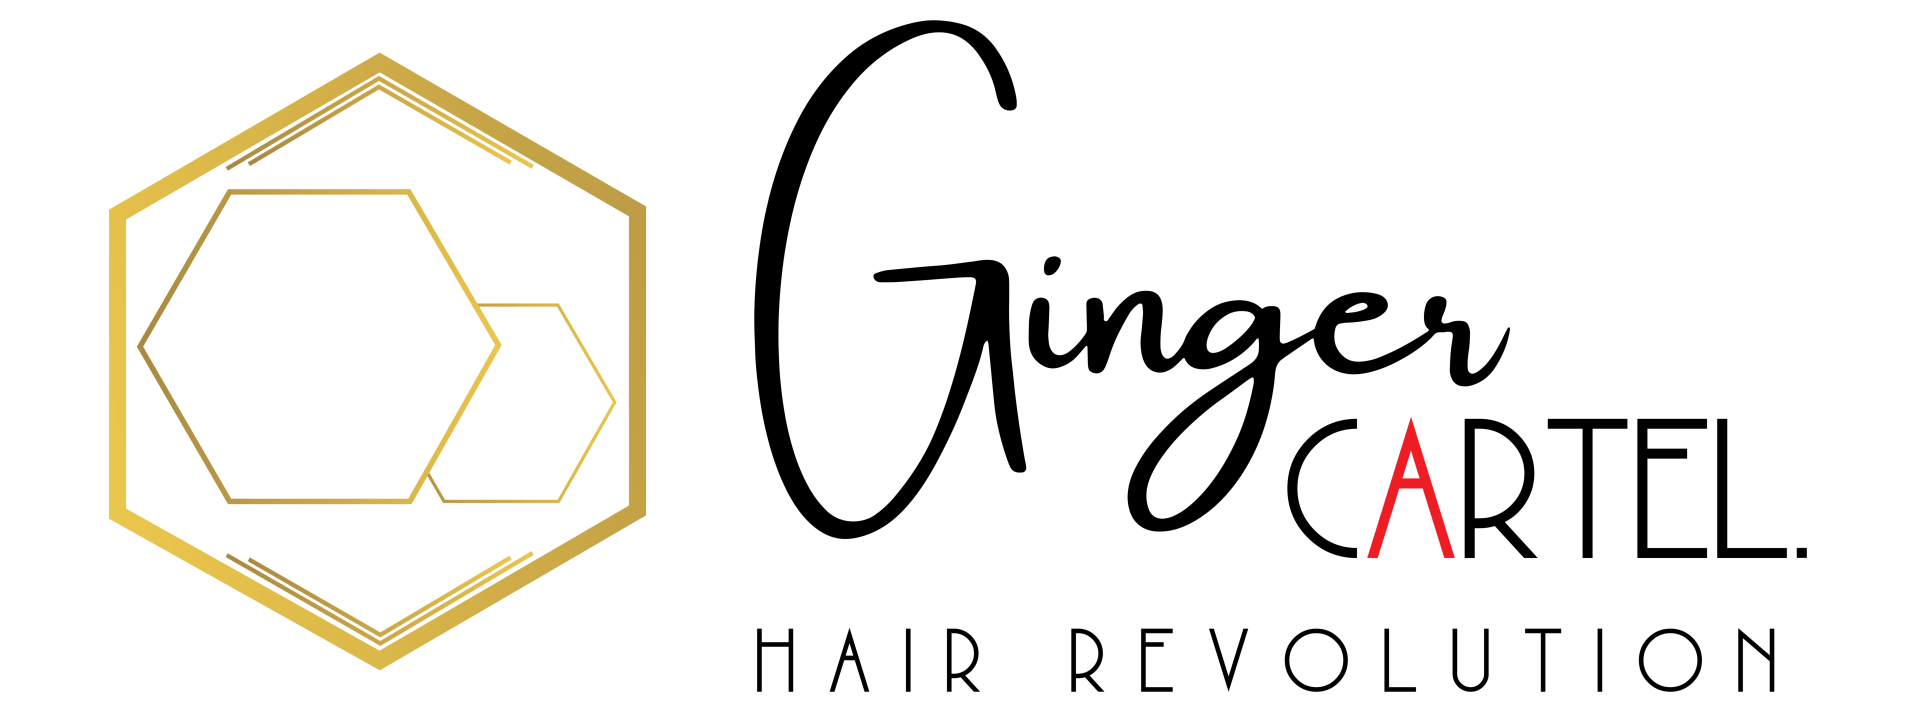 GINGER CARTEL HAIR REVOLUTION